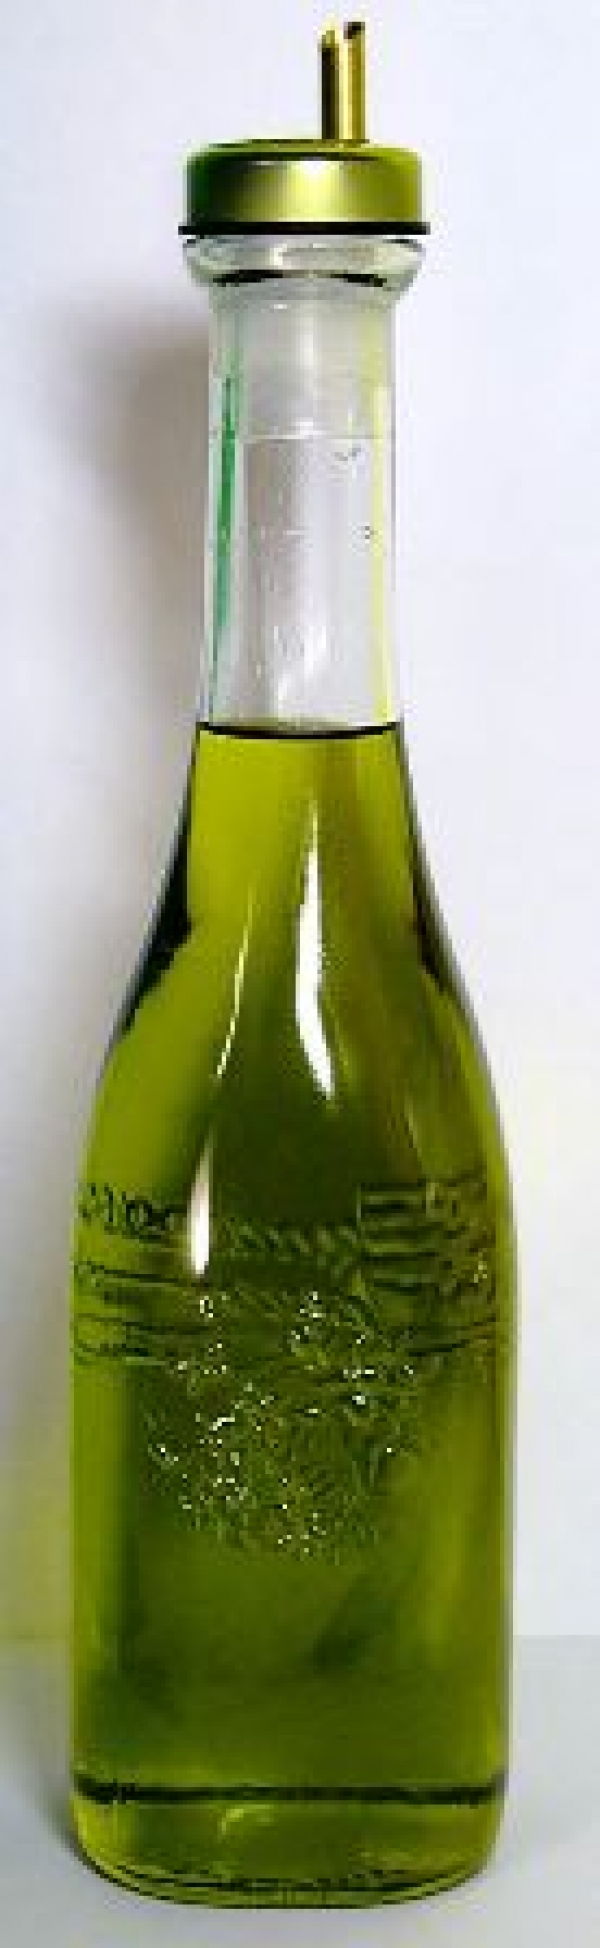 橄欖油-五款橄欖油的美容功效&amp;五種橄欖油面膜製作方法:橄欖油防眼角皺紋!